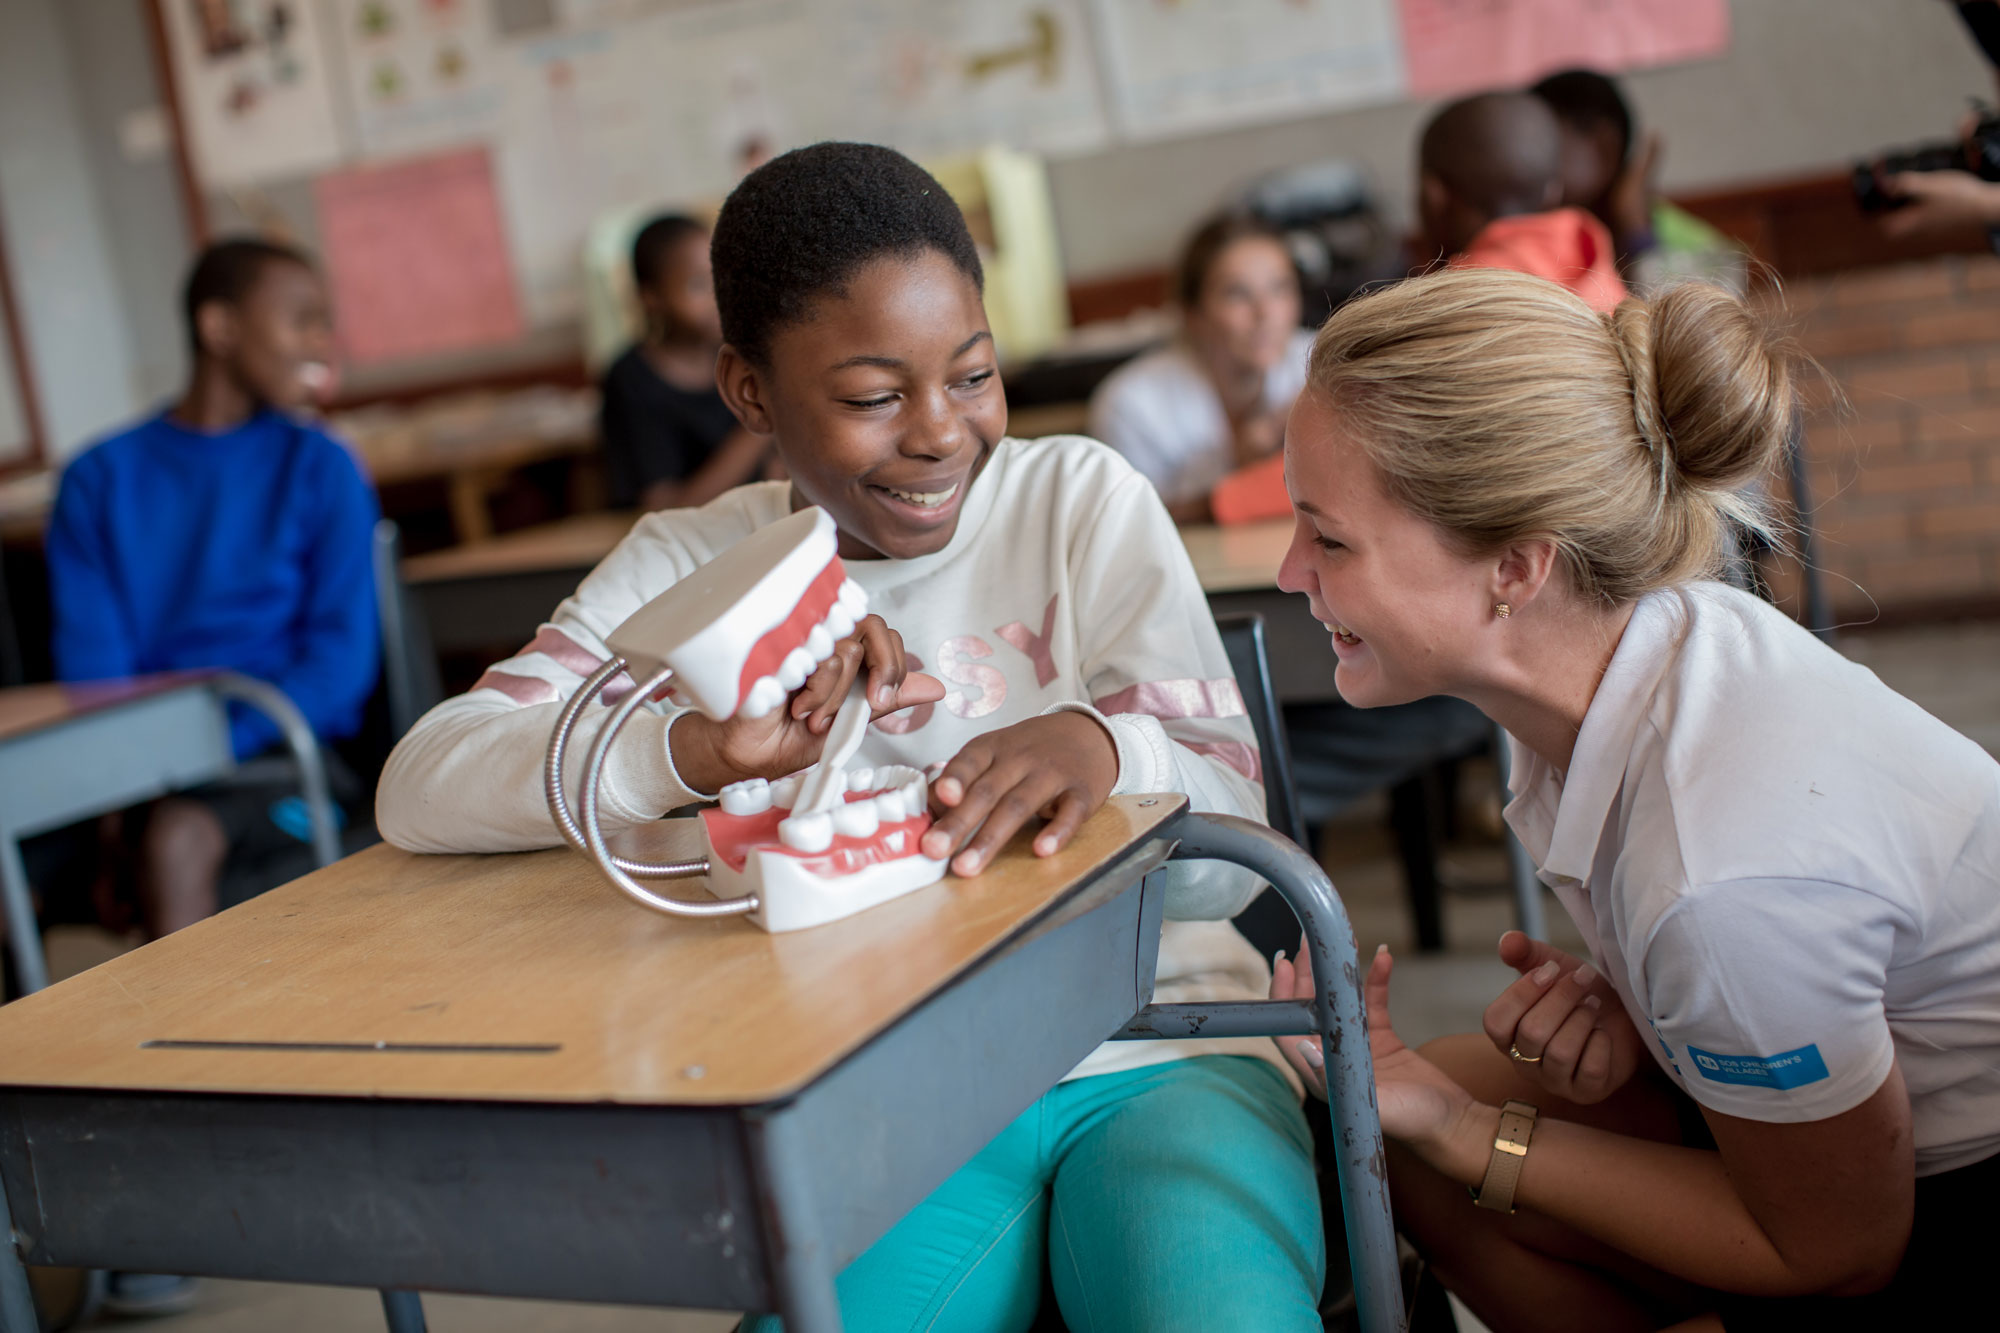 Sofia Villingstam opplevde at elevene var veldig interessert i å lære om god tannhelse. Foto: Karin Schermbrucker